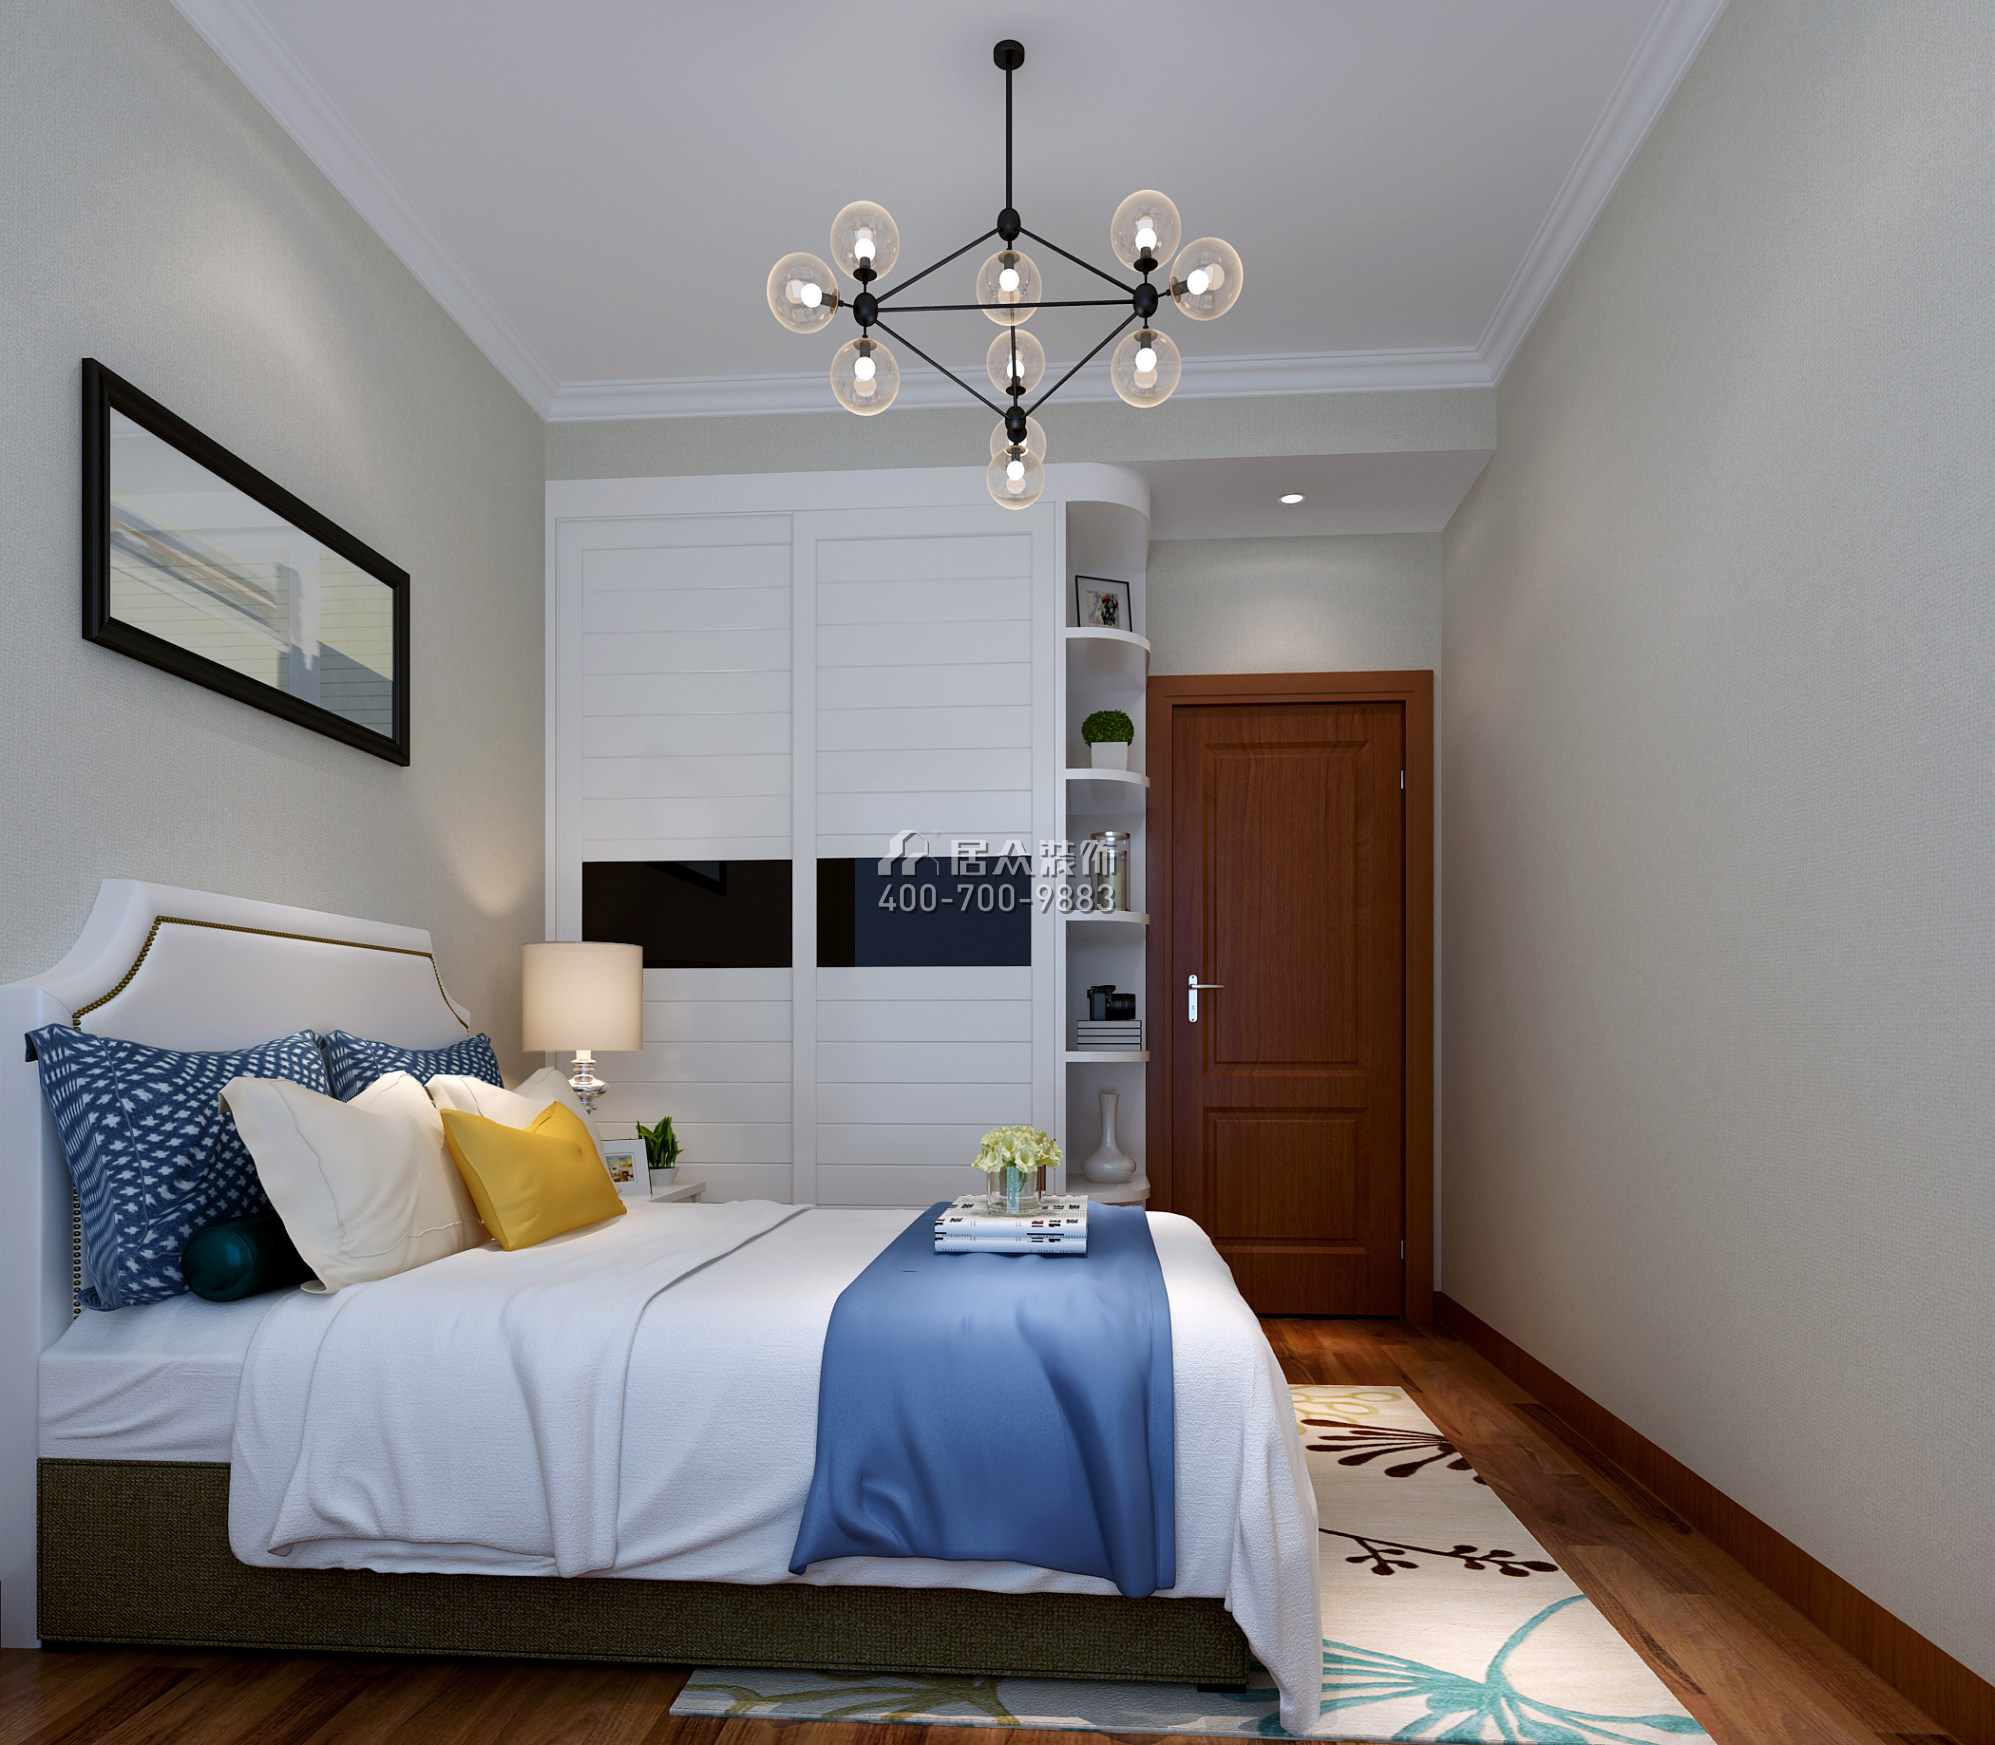 同和悅園139平方米中式風格平層戶型臥室裝修效果圖